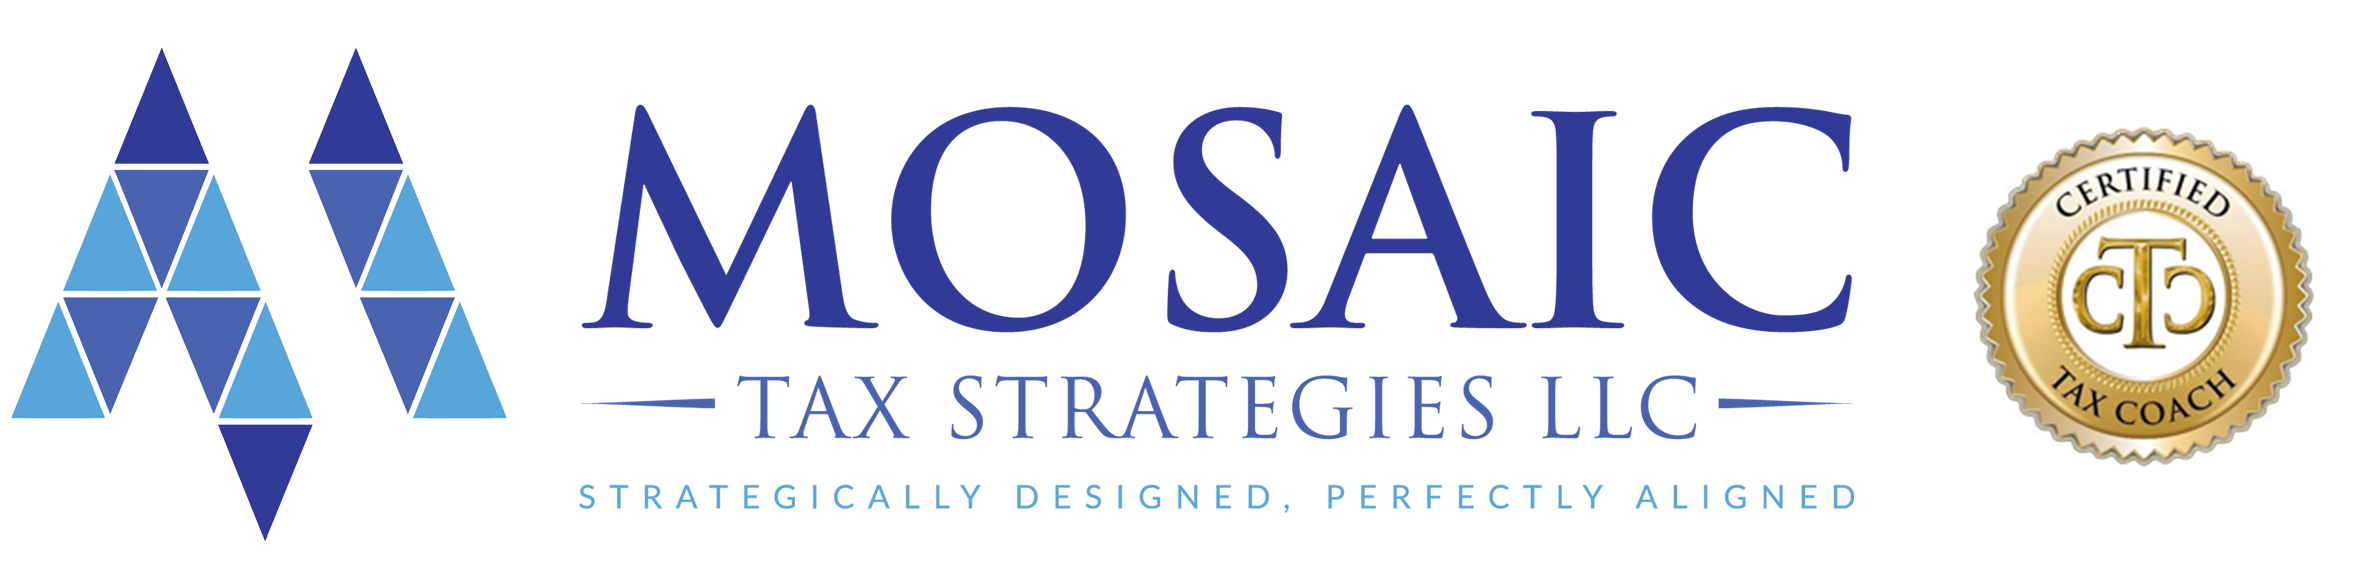 Mosaic Tax Strategies LLC Logo